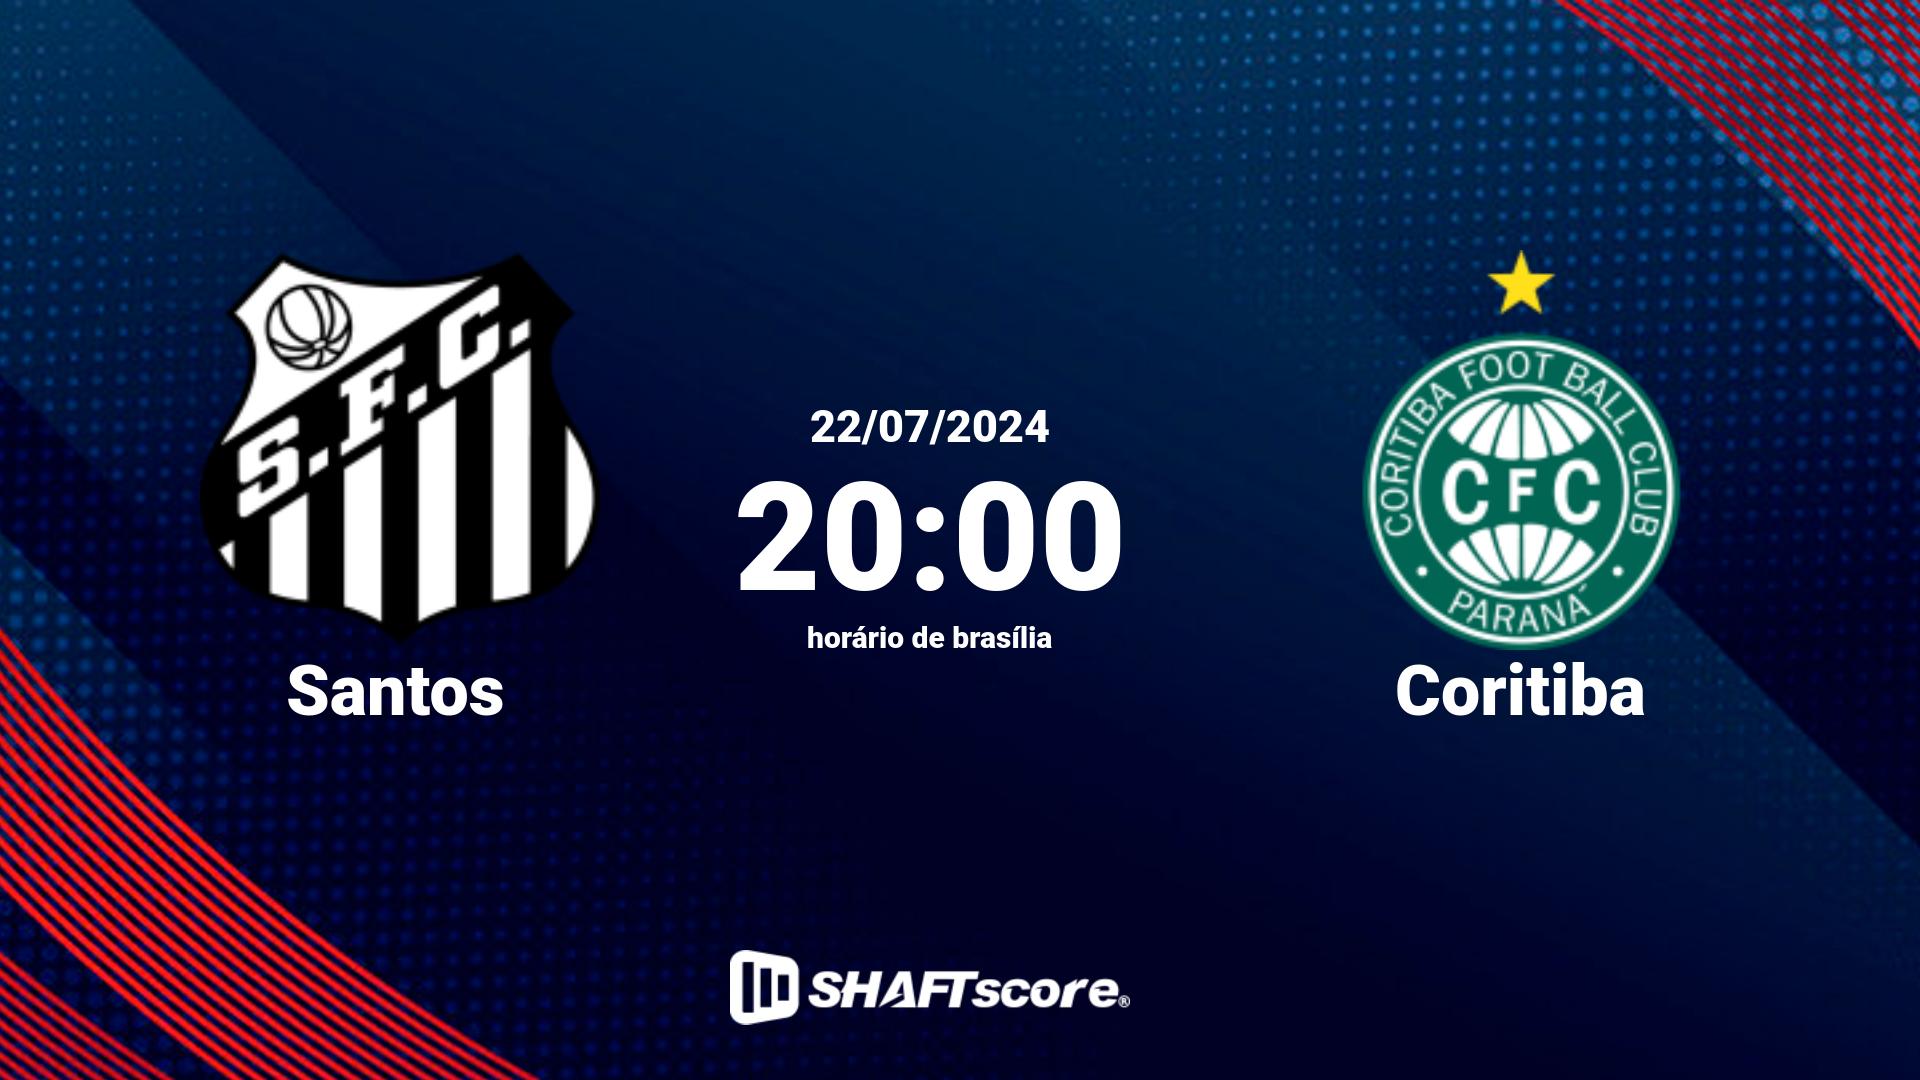 Estatísticas do jogo Santos vs Coritiba 22.07 20:00